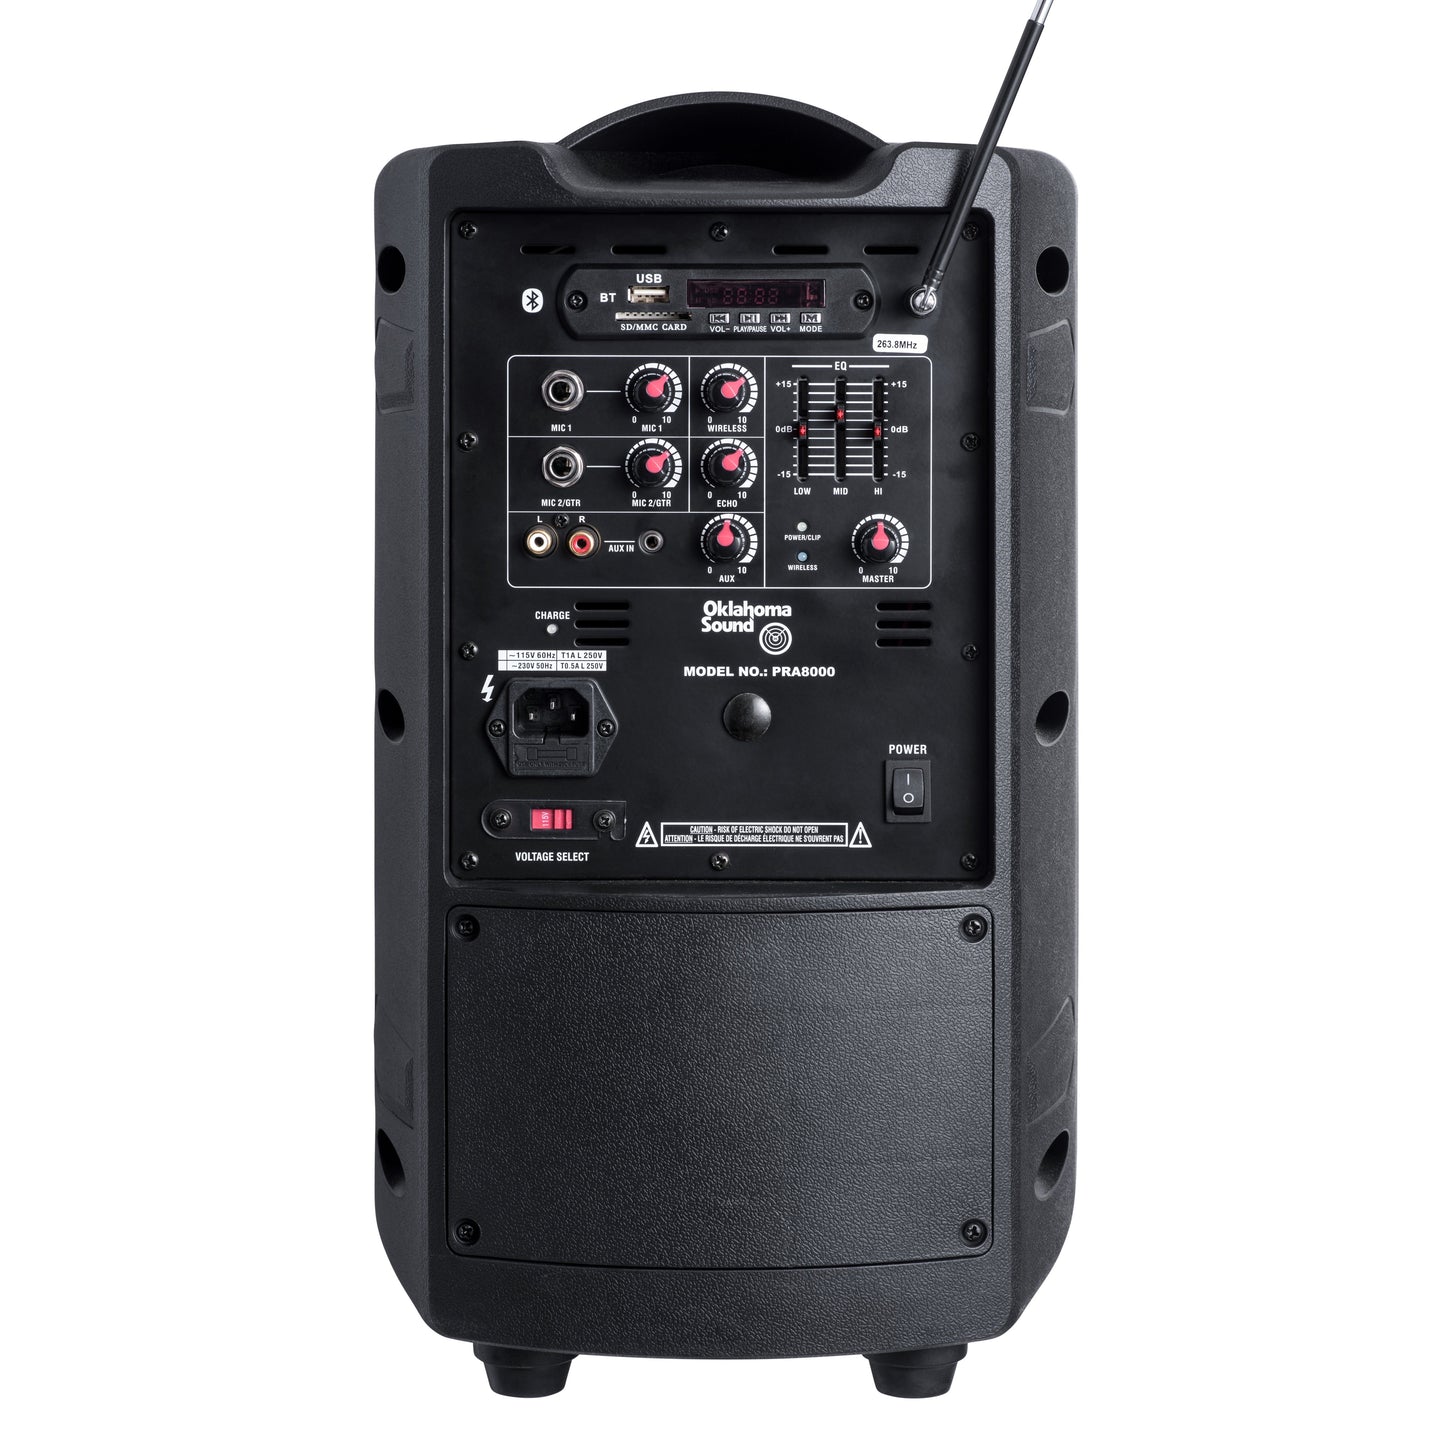 Oklahoma Sound® 40 Watt Wireless PA System w/ Wireless Handheld Mic